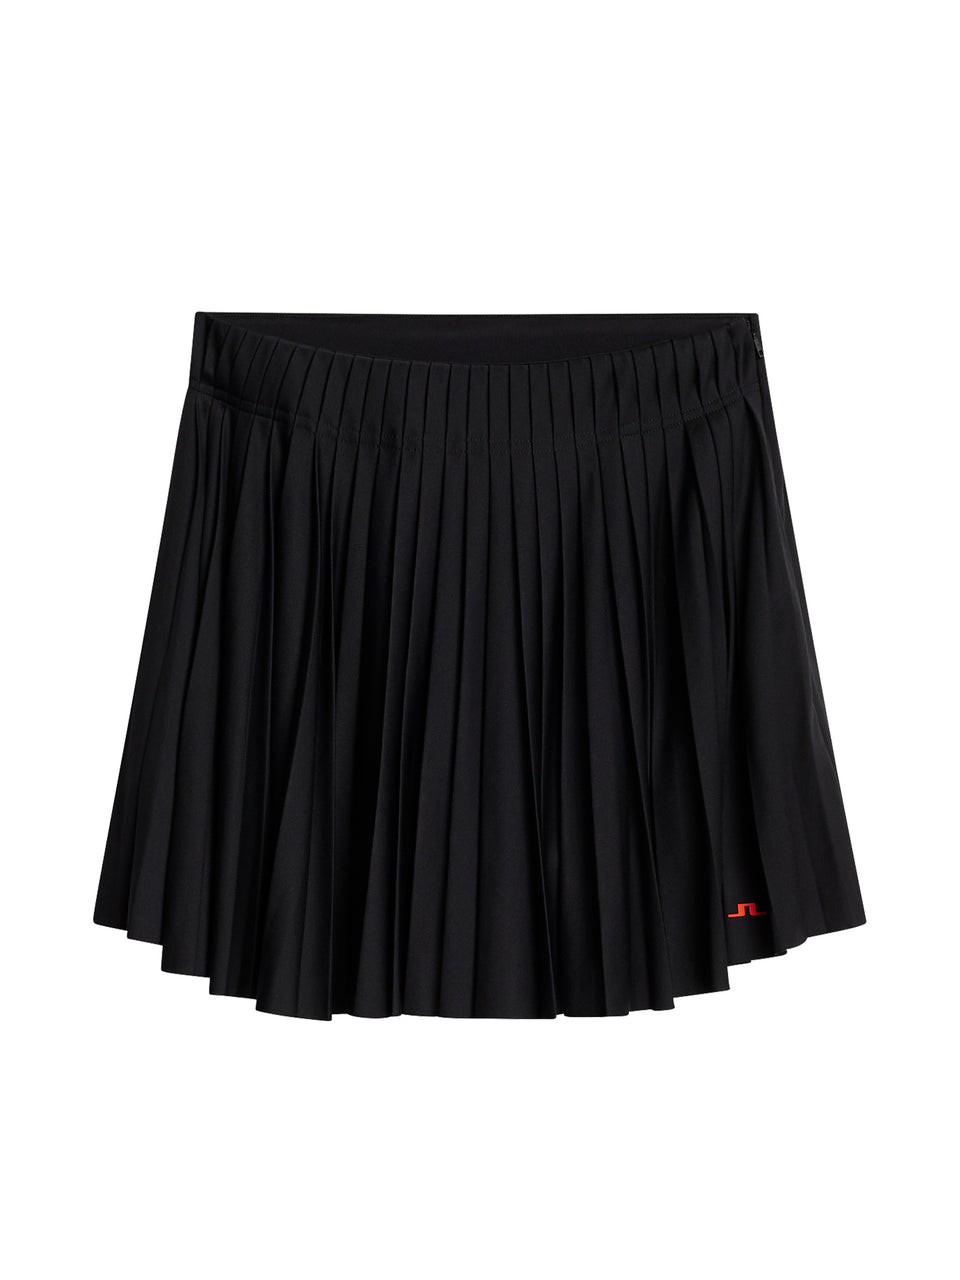 Gayle Skirt / Black